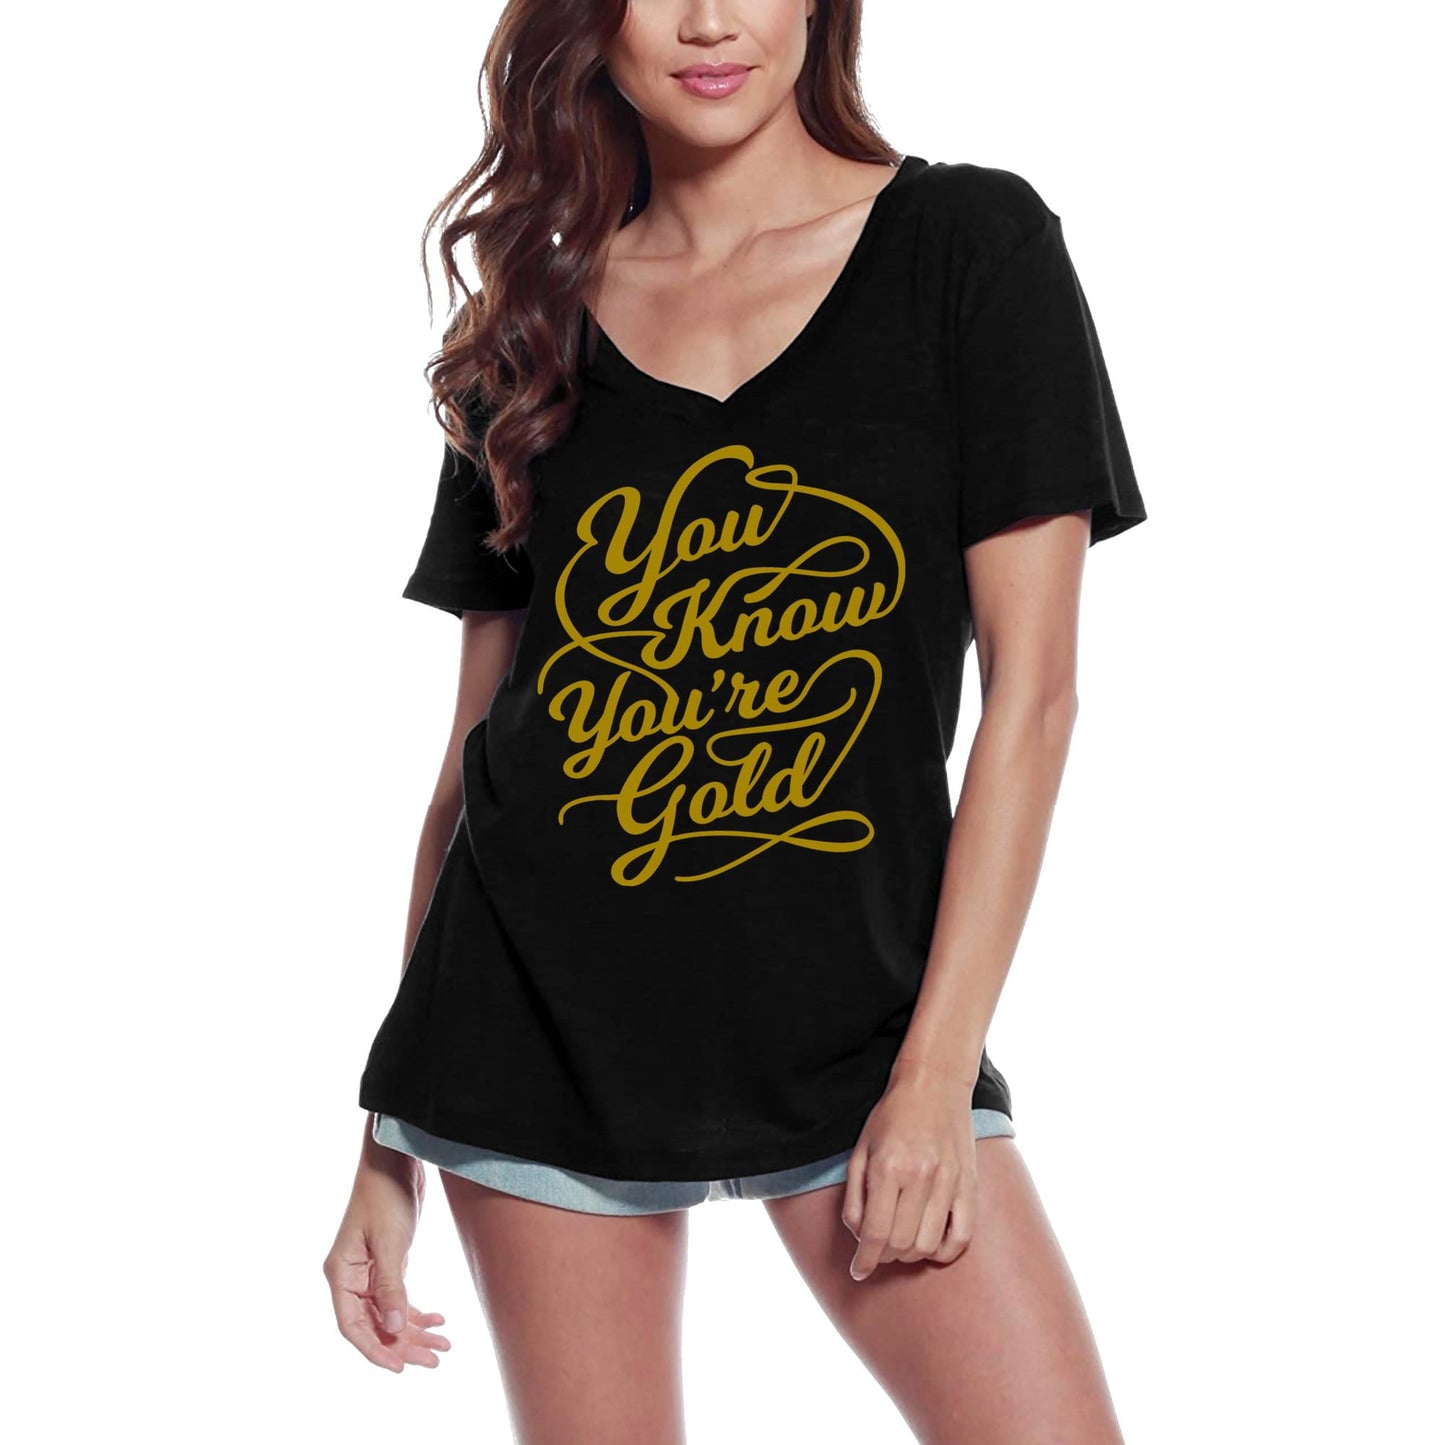 ULTRABASIC T-shirt pour femme You Know You're Gold – T-shirt avec slogan de motivation inspirant